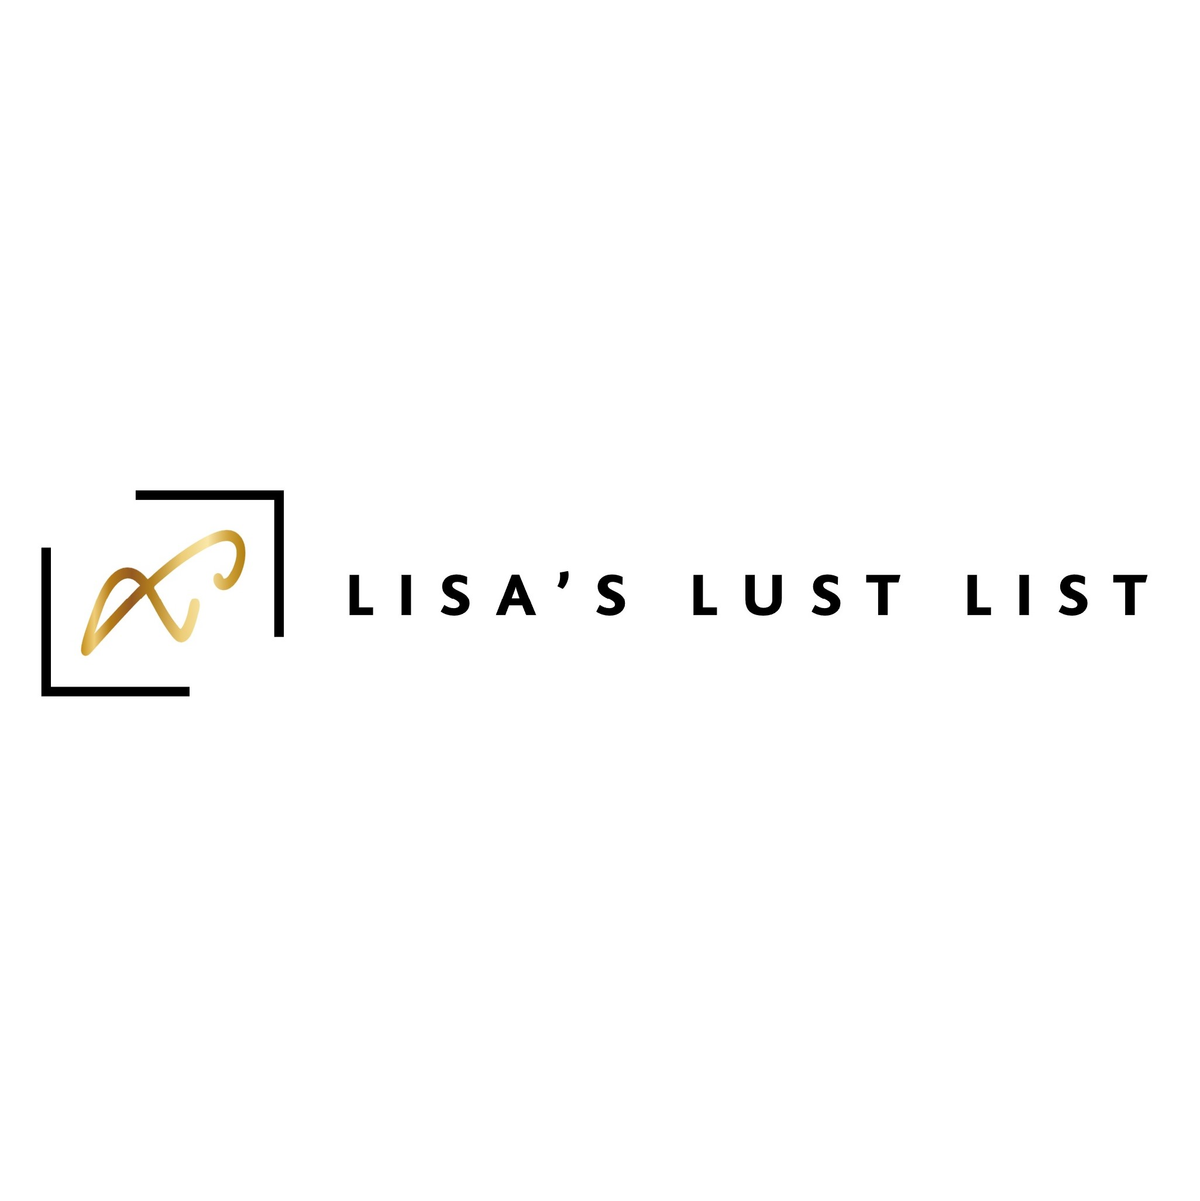 Lisa's Lust List